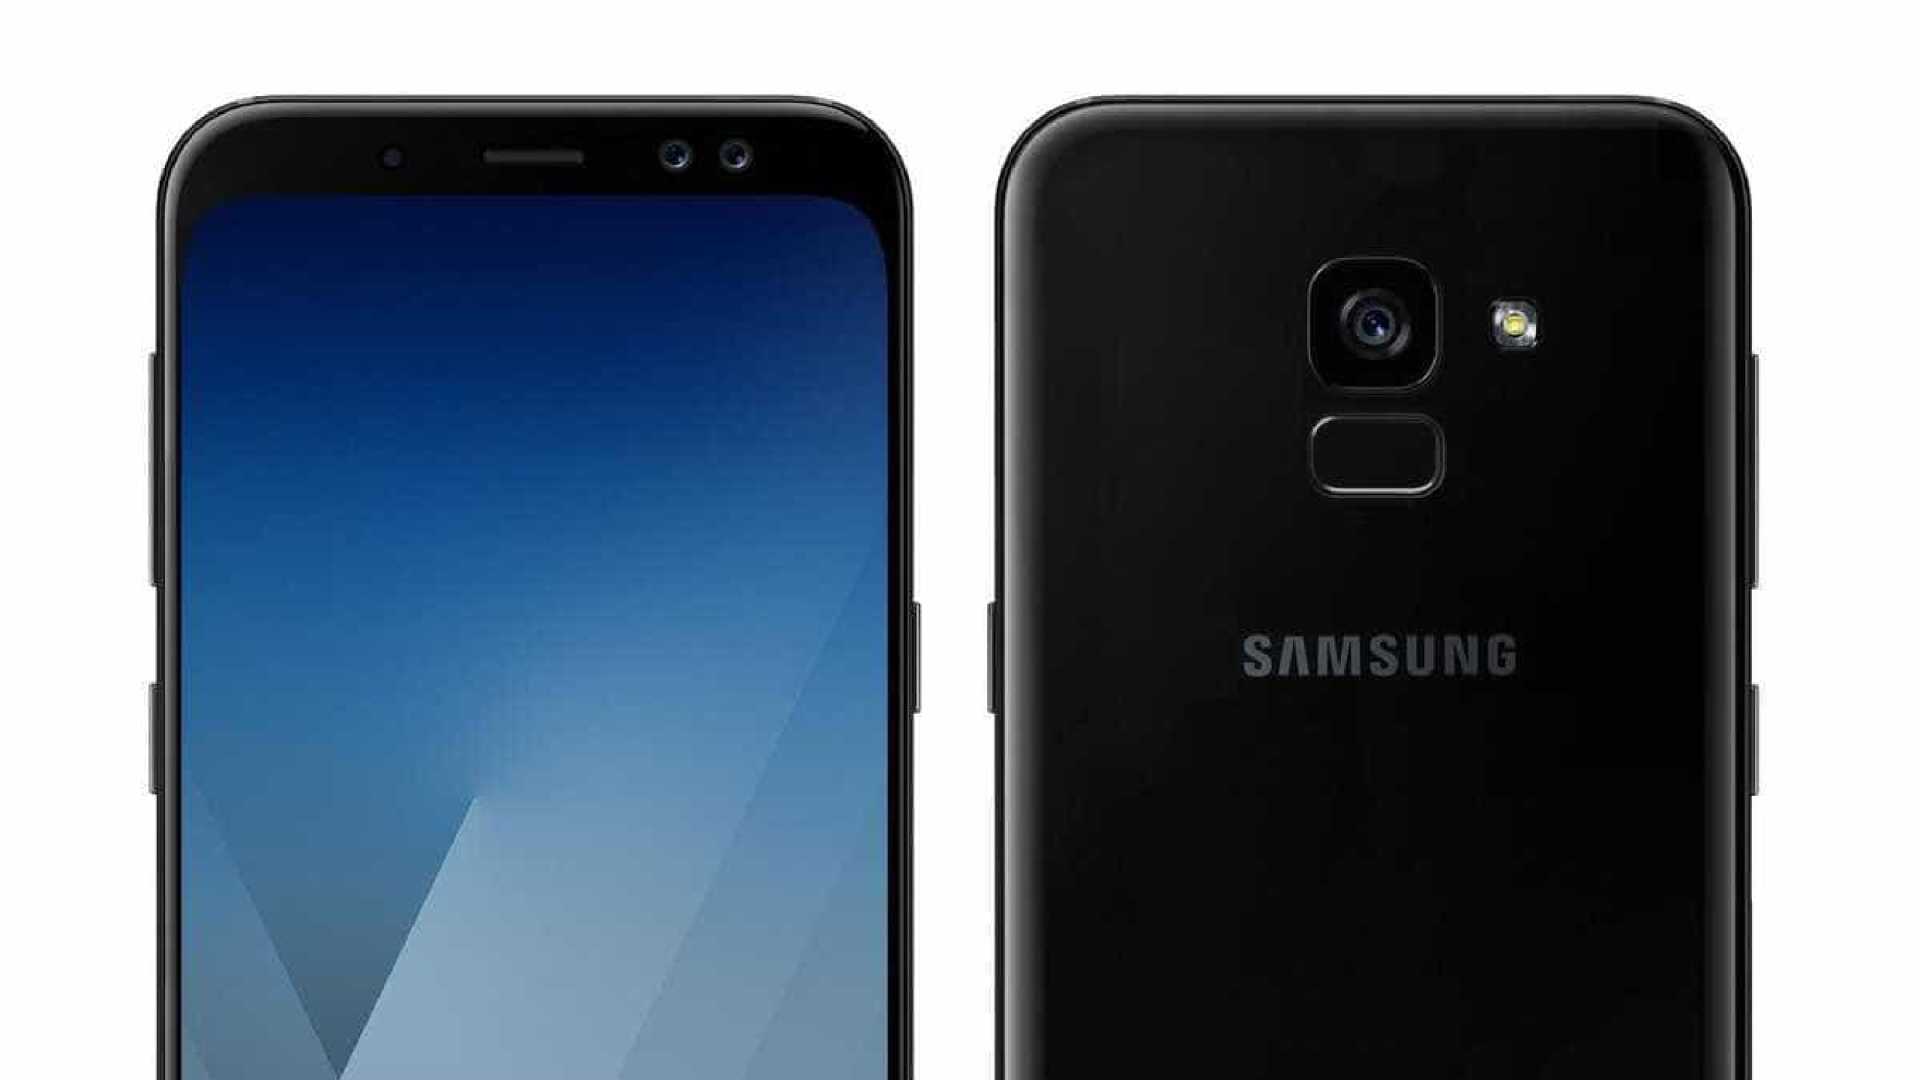 Samsung ยืนยันข้อมูลล่าสุดของ Galaxy A5 รุ่นปี 2018 : ดีไซน์ใหม่ หน้าจอไร้ขอบ